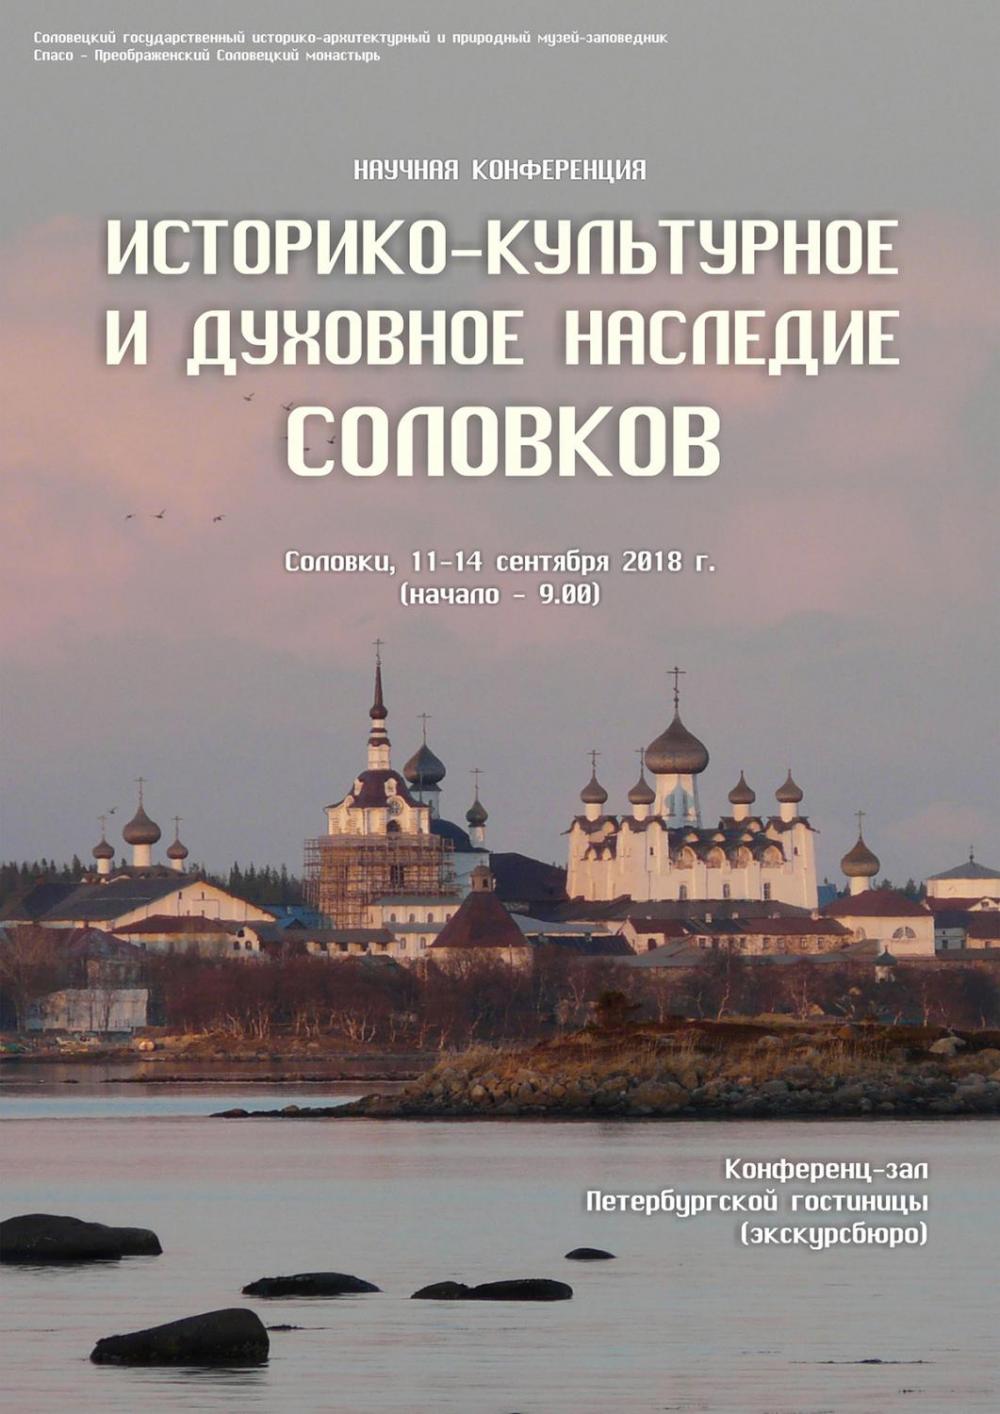 Афиша конференции «Историко-культурное и духовное наследие Соловков»